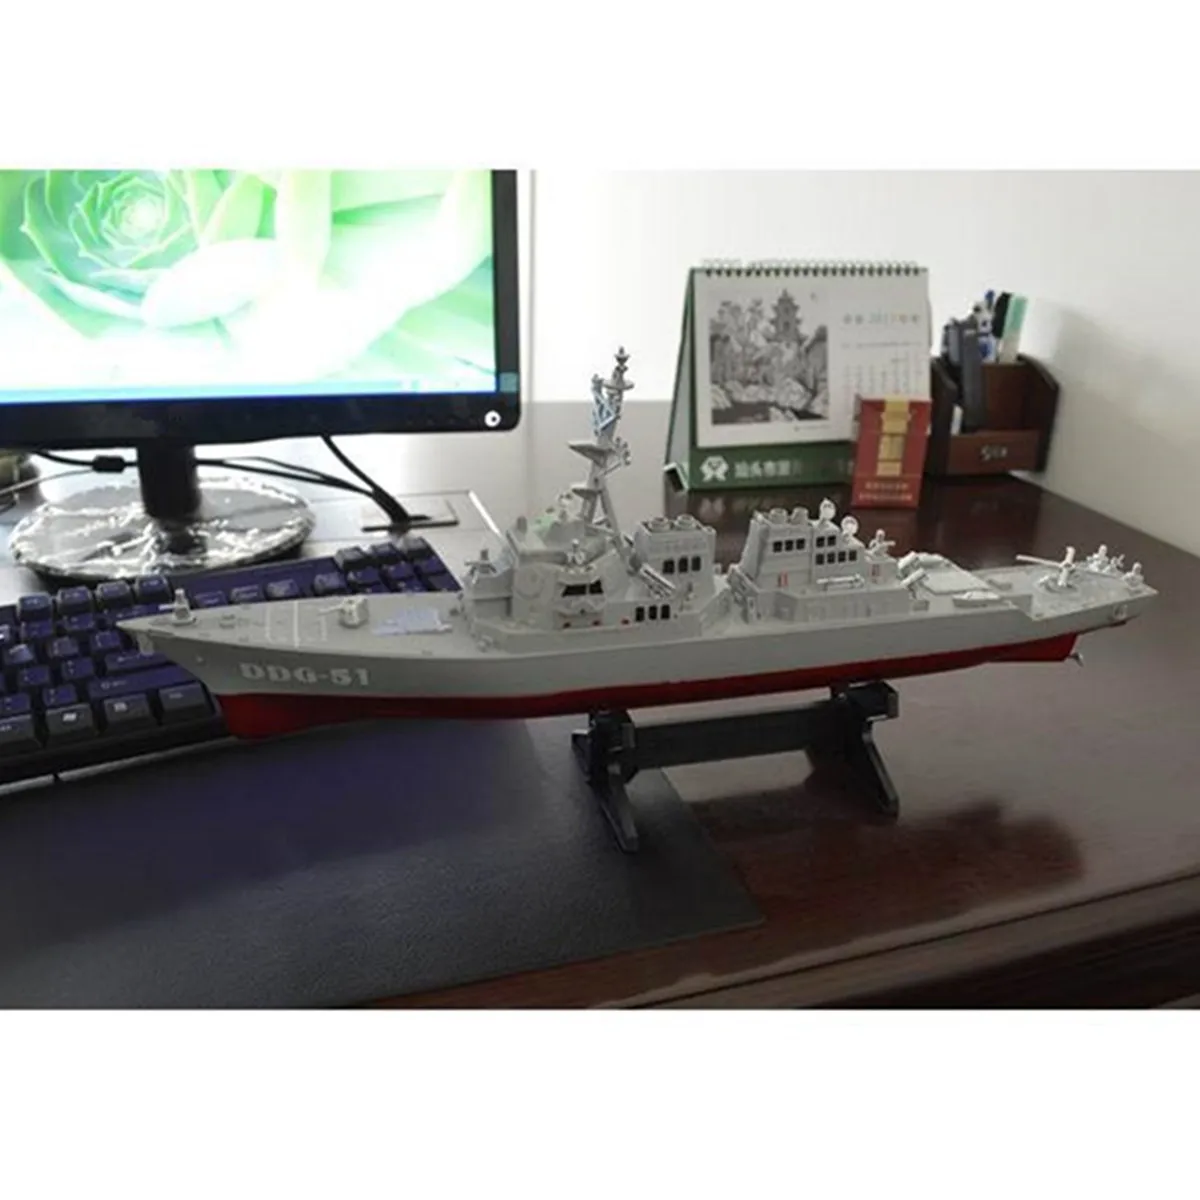 Армейский управляемый ракетный эсминец модель корабля статические игрушки с дисплеем Стенд военный корабль модель DIY Развивающие игрушки хобби детский подарок